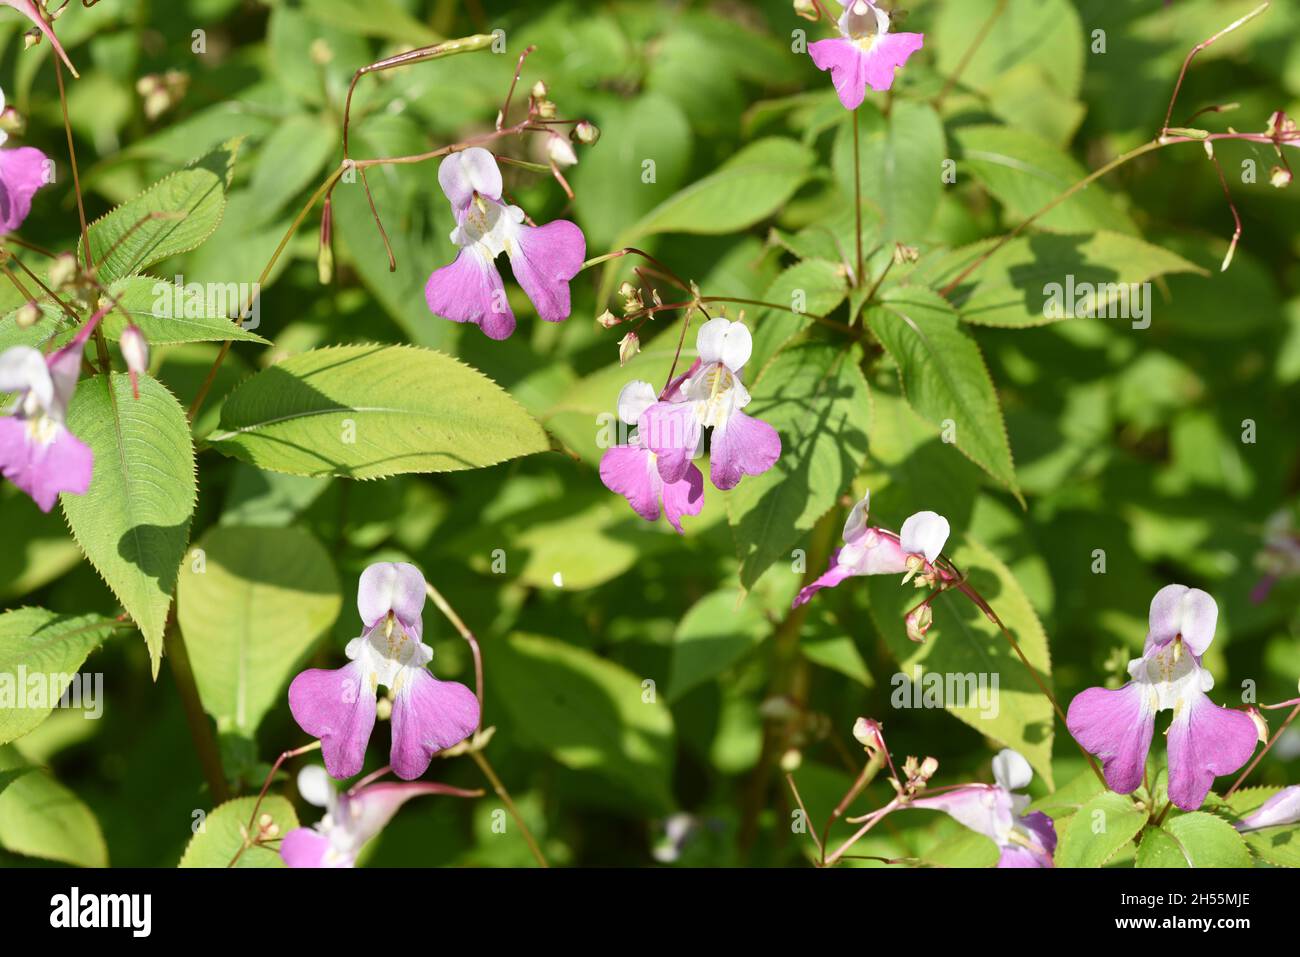 Druesiges Springkraut, Impatiens glandulifera ist eine Heilpflanze die auch in der Medizin eingesetzt wird. Druesiges balsam, gland, Impatiens glandul Stock Photo